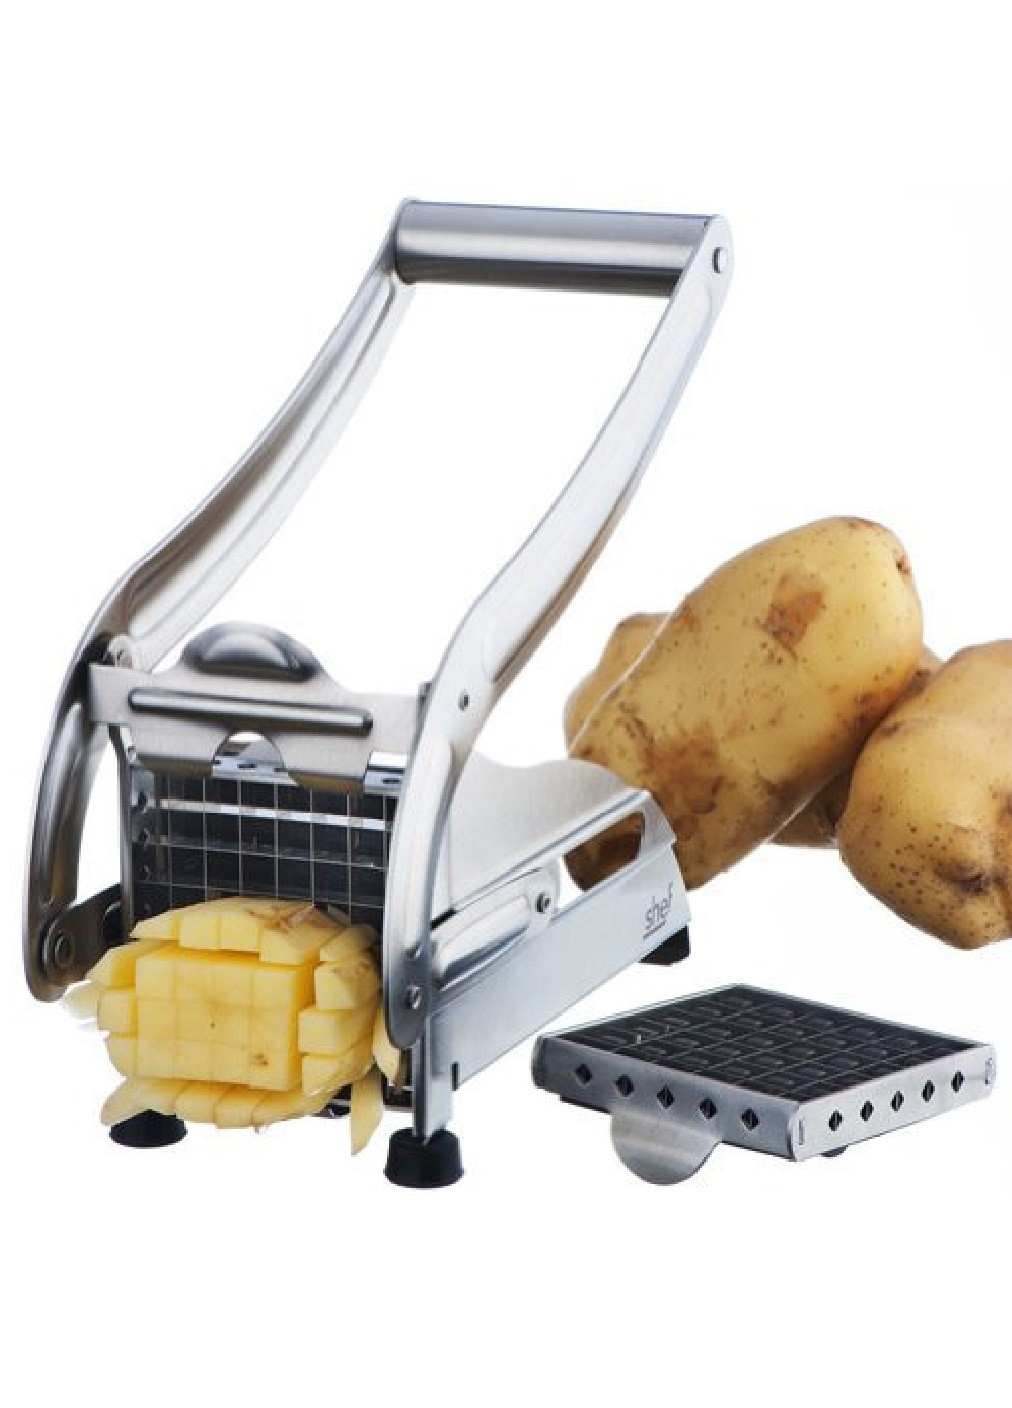 Картофелерезка овощерезка механическая устройство для резки картофеля фри 26х12,5х9,5 см (474818-Prob) Unbranded (259906171)